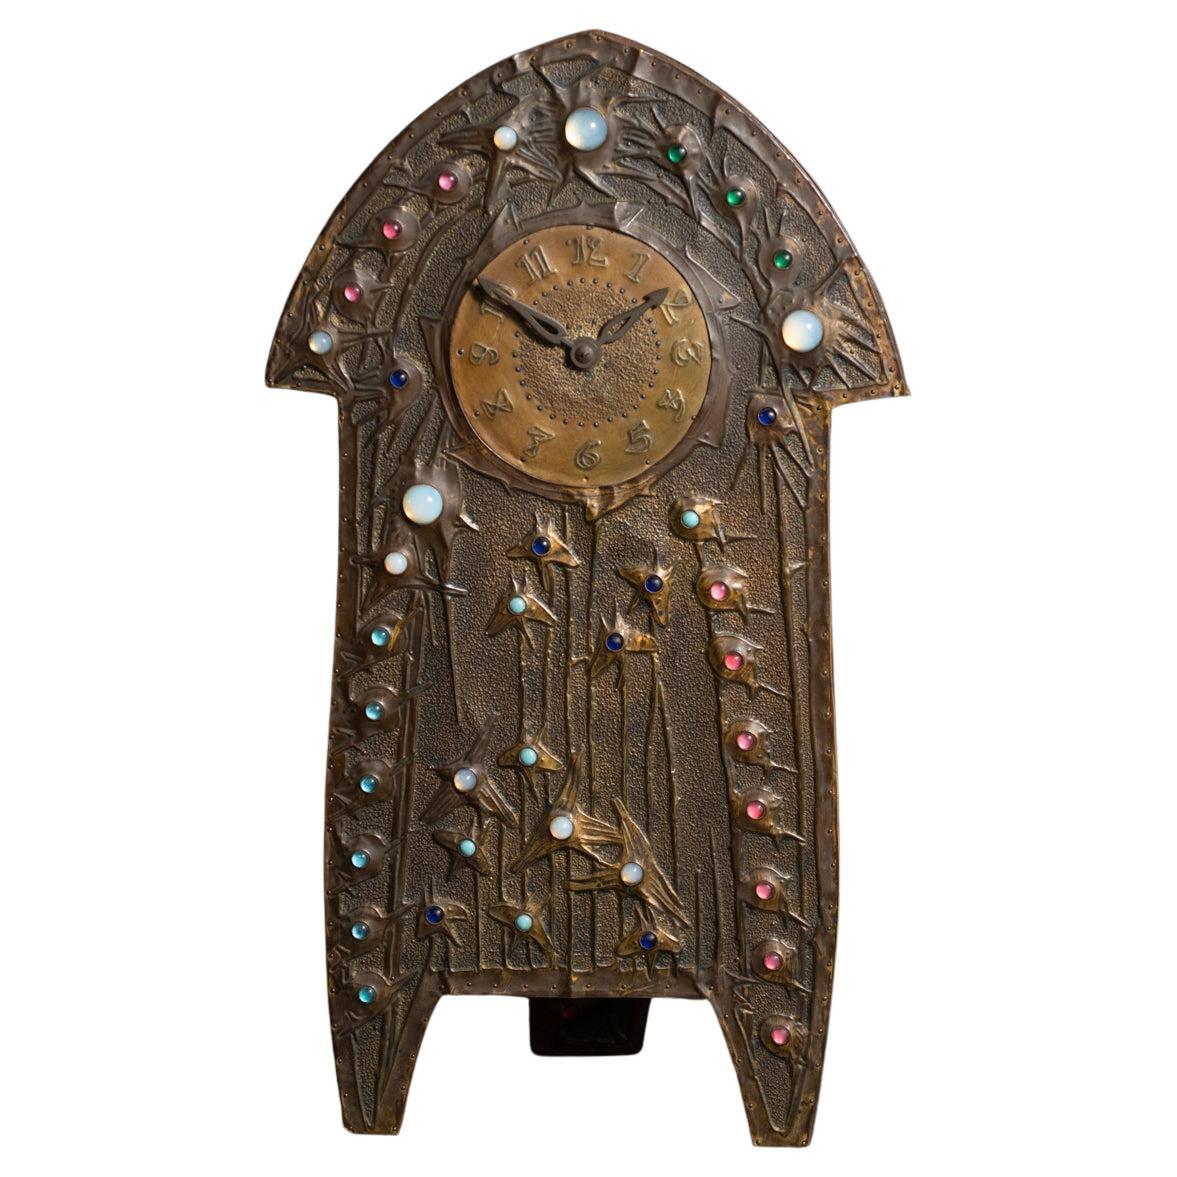 Jeweled Art Nouveau Repoussé Clock by Alfred Daguet, with Original Mechanisim